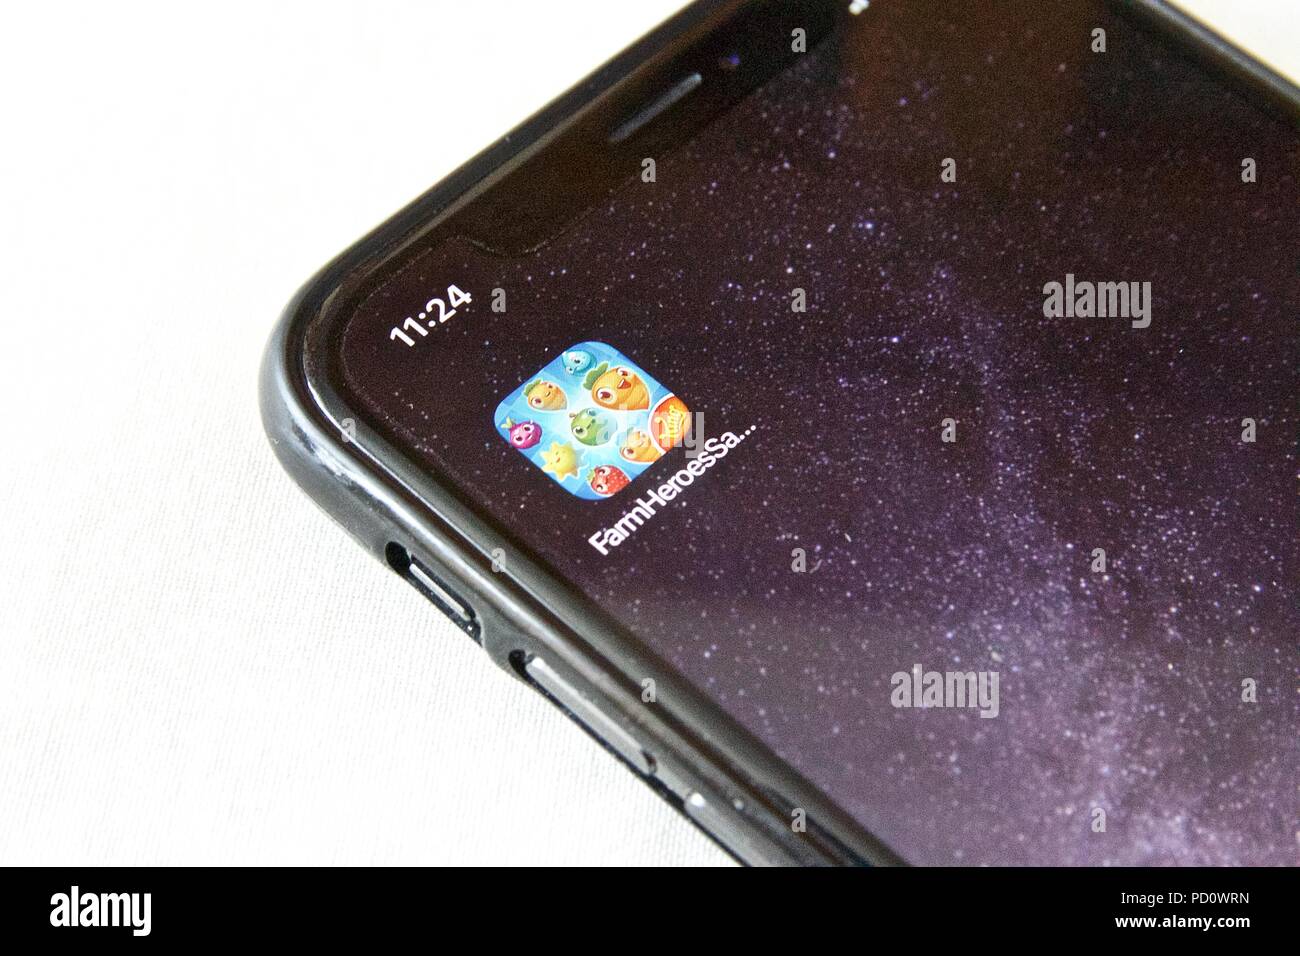 Die App Symbol für Farm Helden Saga, eine Farm themed Match 3-Spiel von König, auf einem iPhone X vor einem weißen Hintergrund Stockfoto